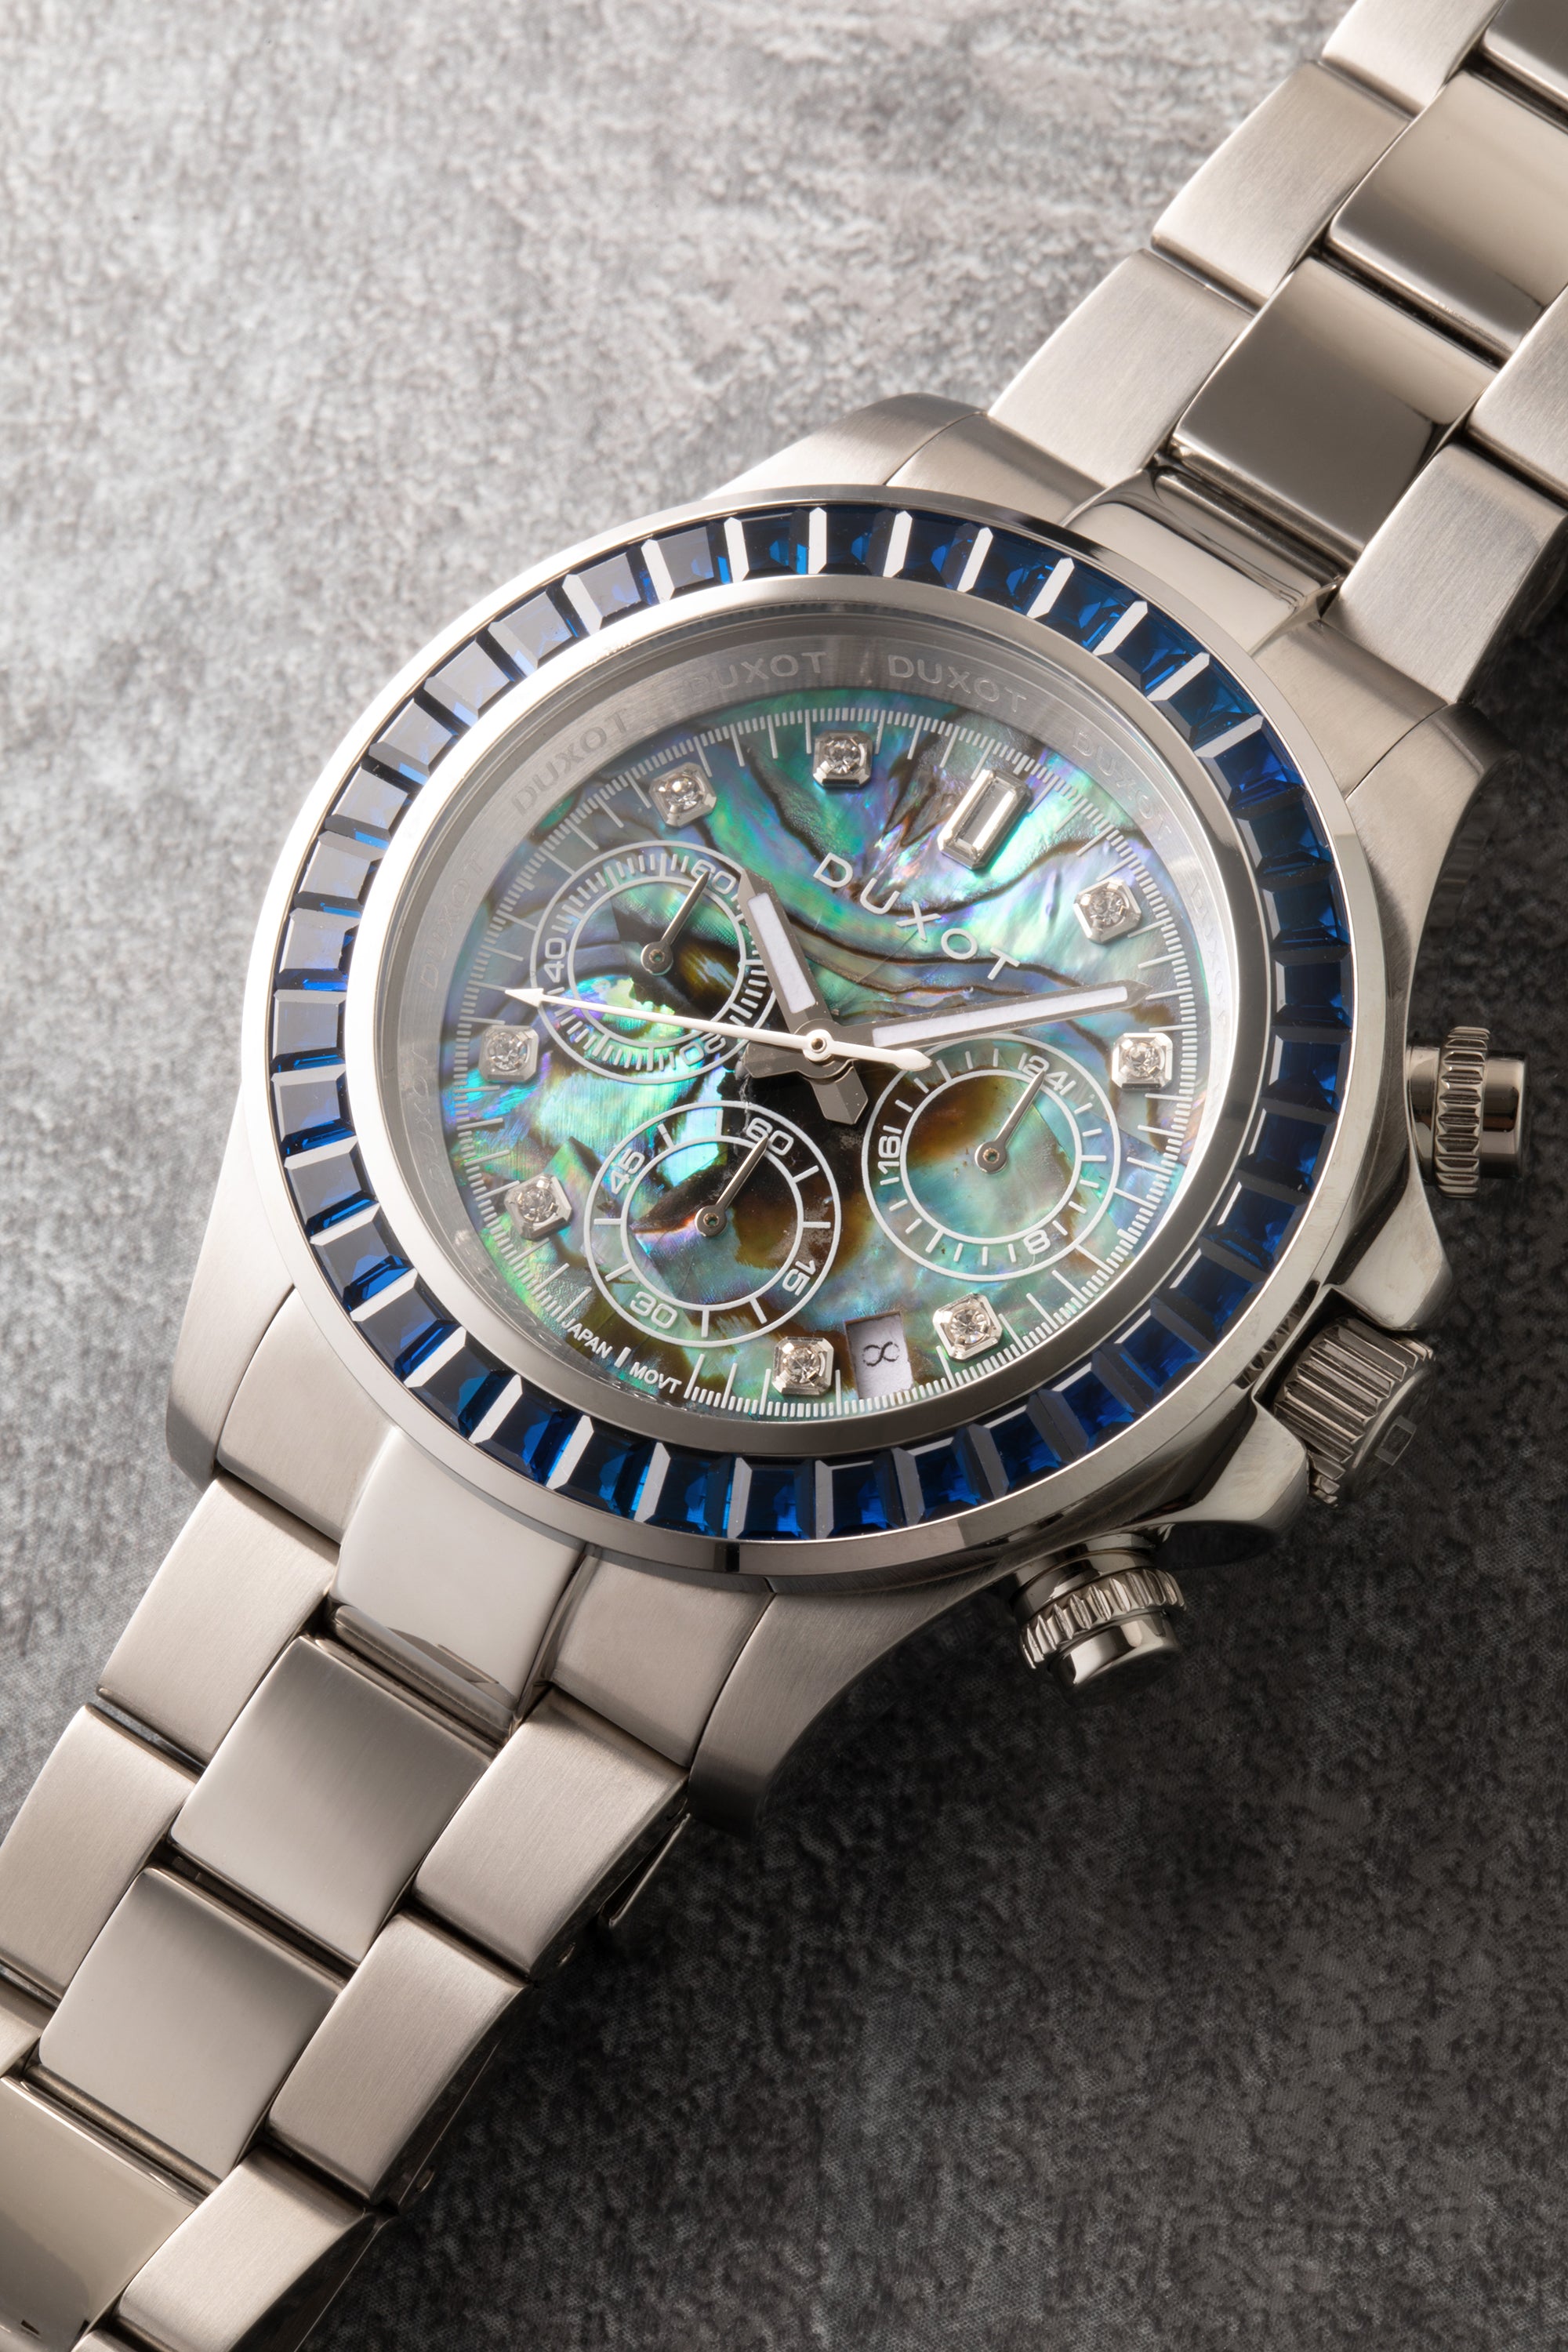 DUXOT Duxot Atlantica Japanese Meca-quartz Abalone Watch DX-2048-66